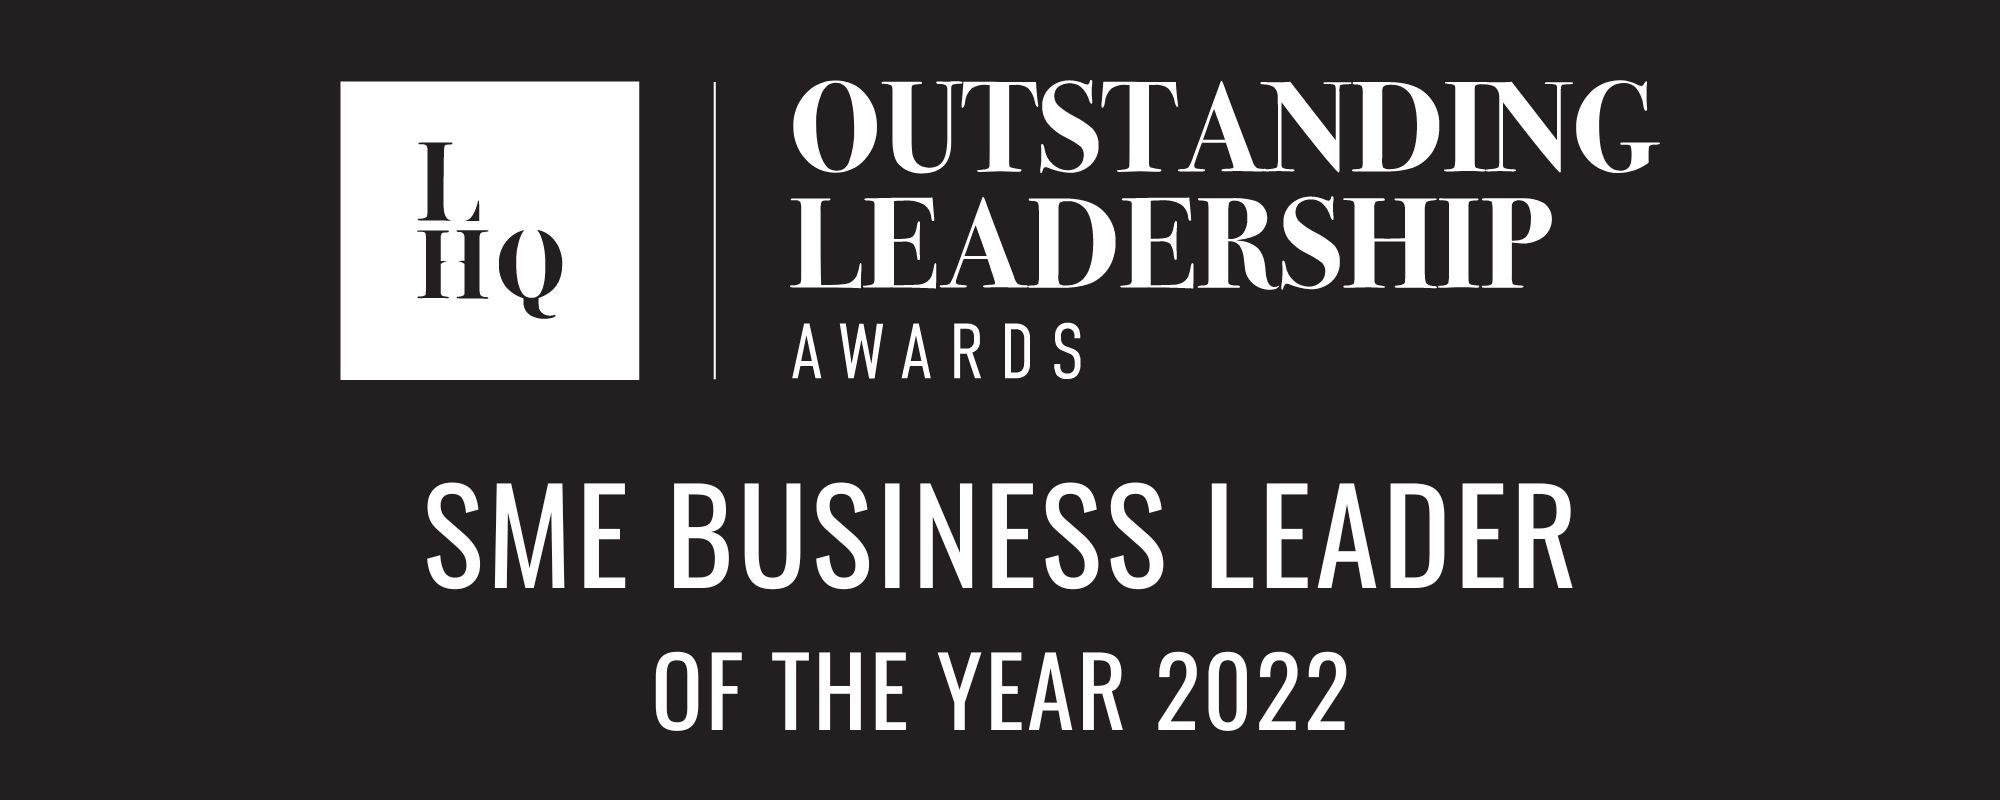 Outstanding Leadership Awards SME Winner